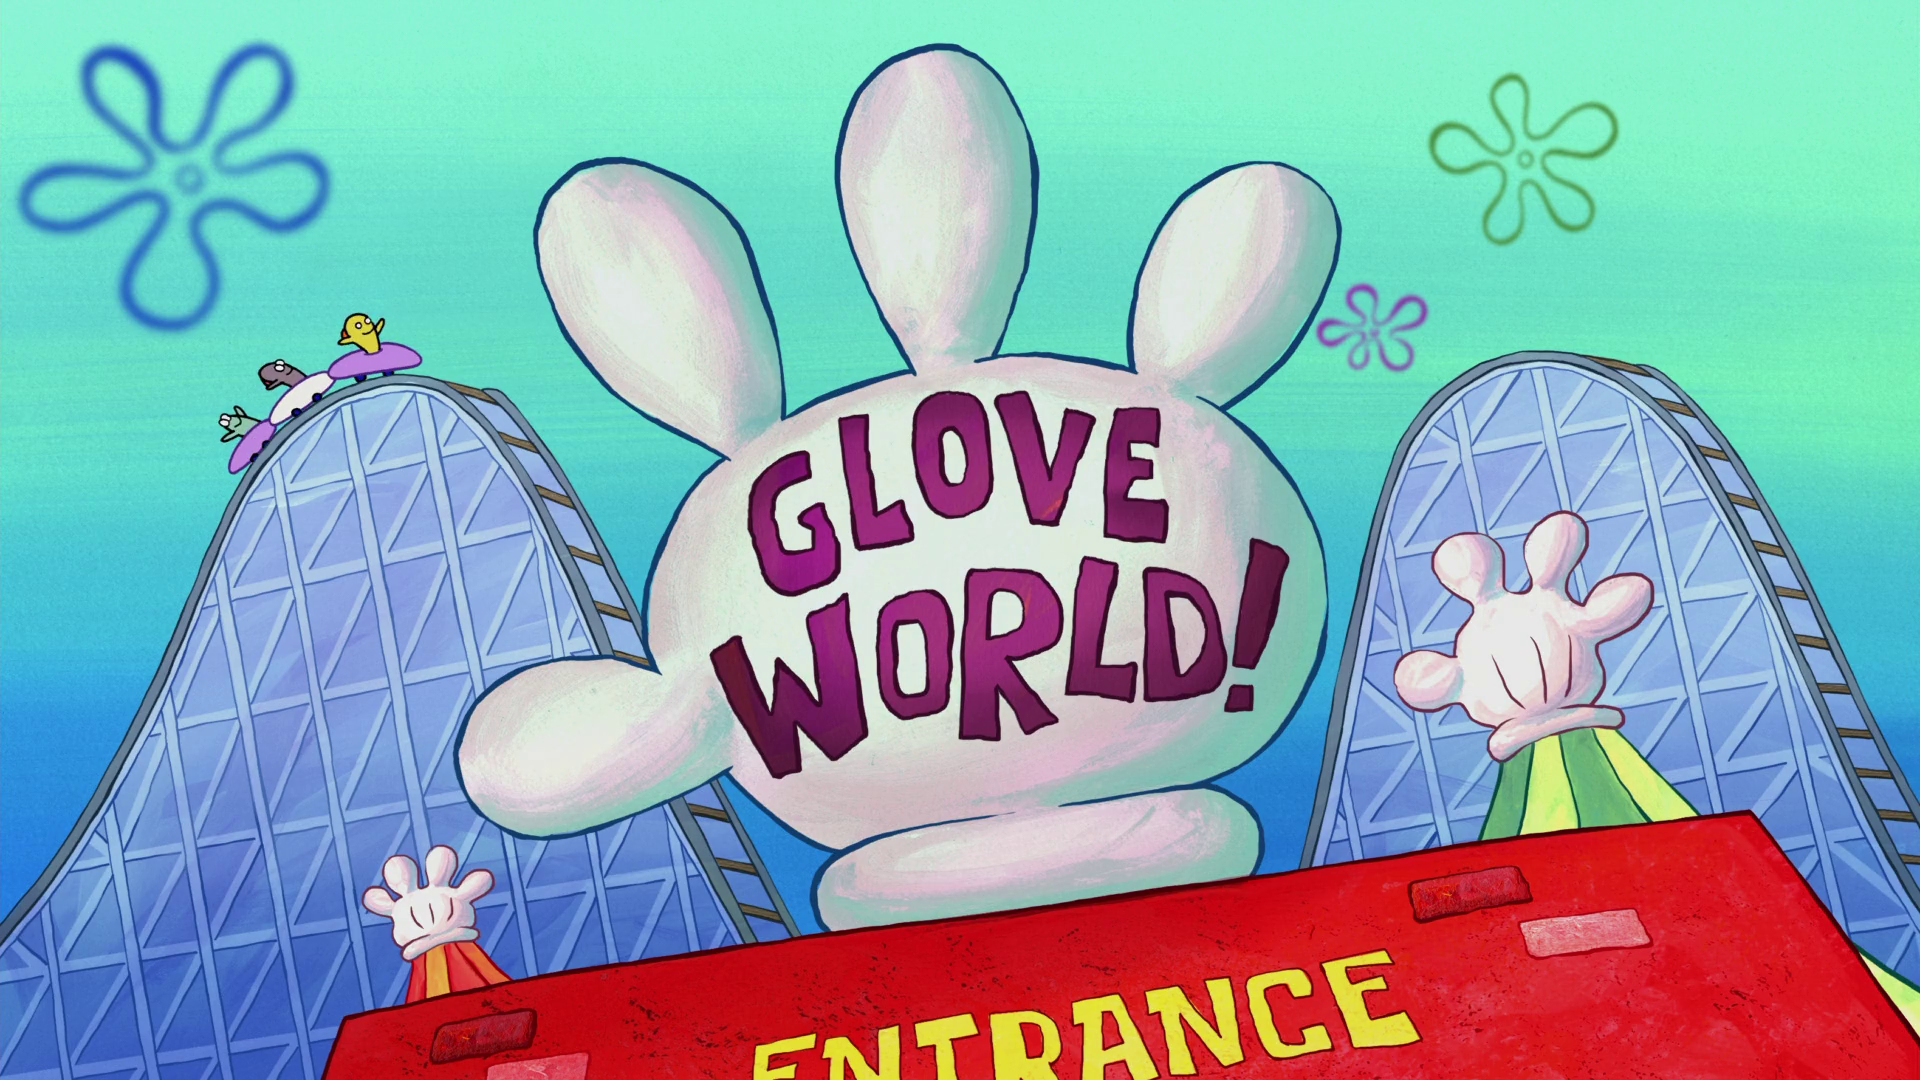 spongebob glove world toy